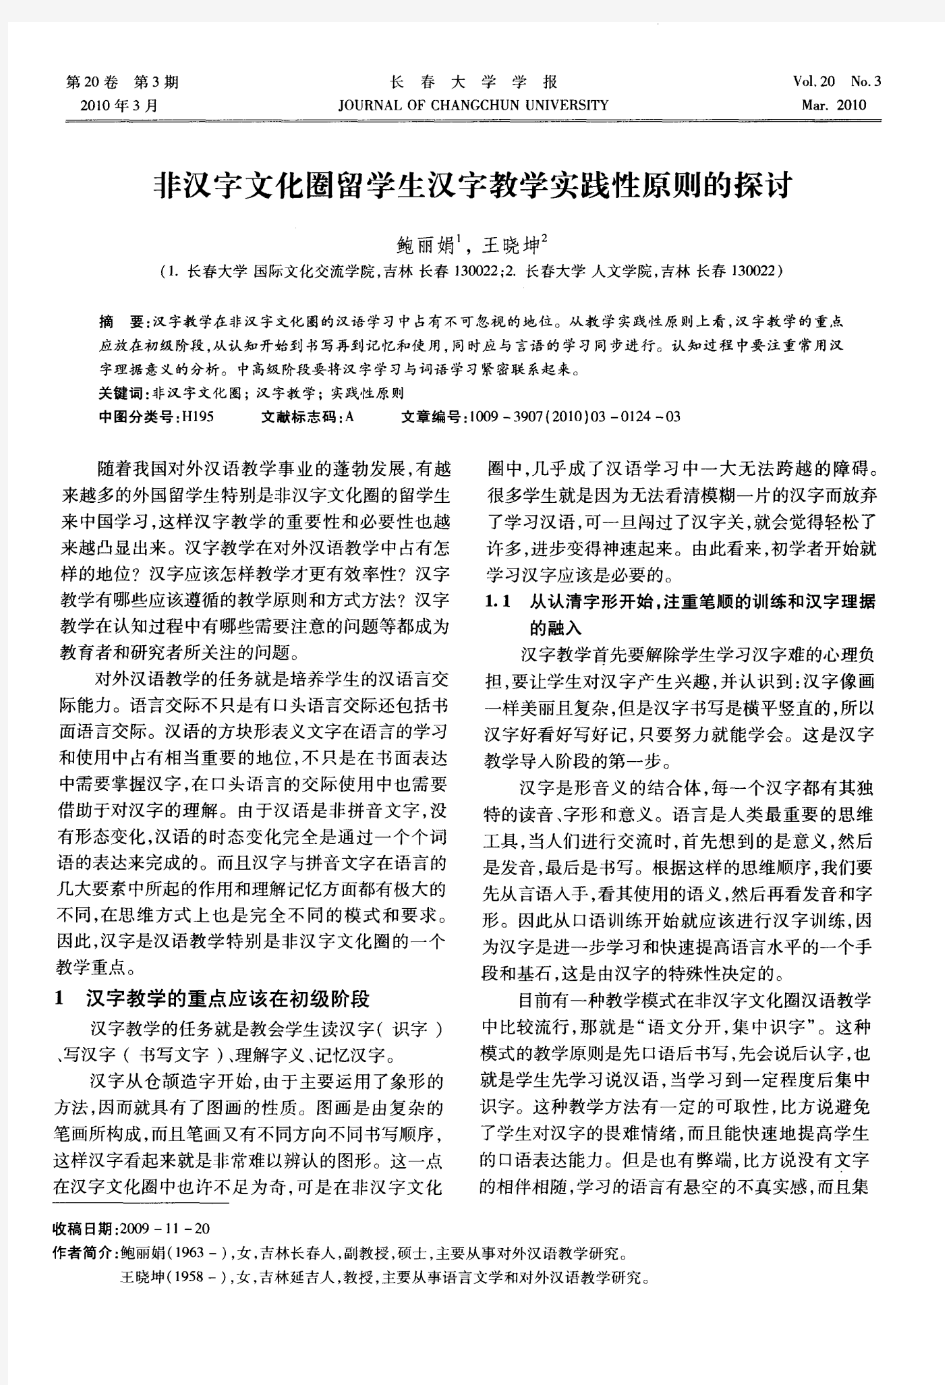 非汉字文化圈留学生汉字教学实践性原则的探讨